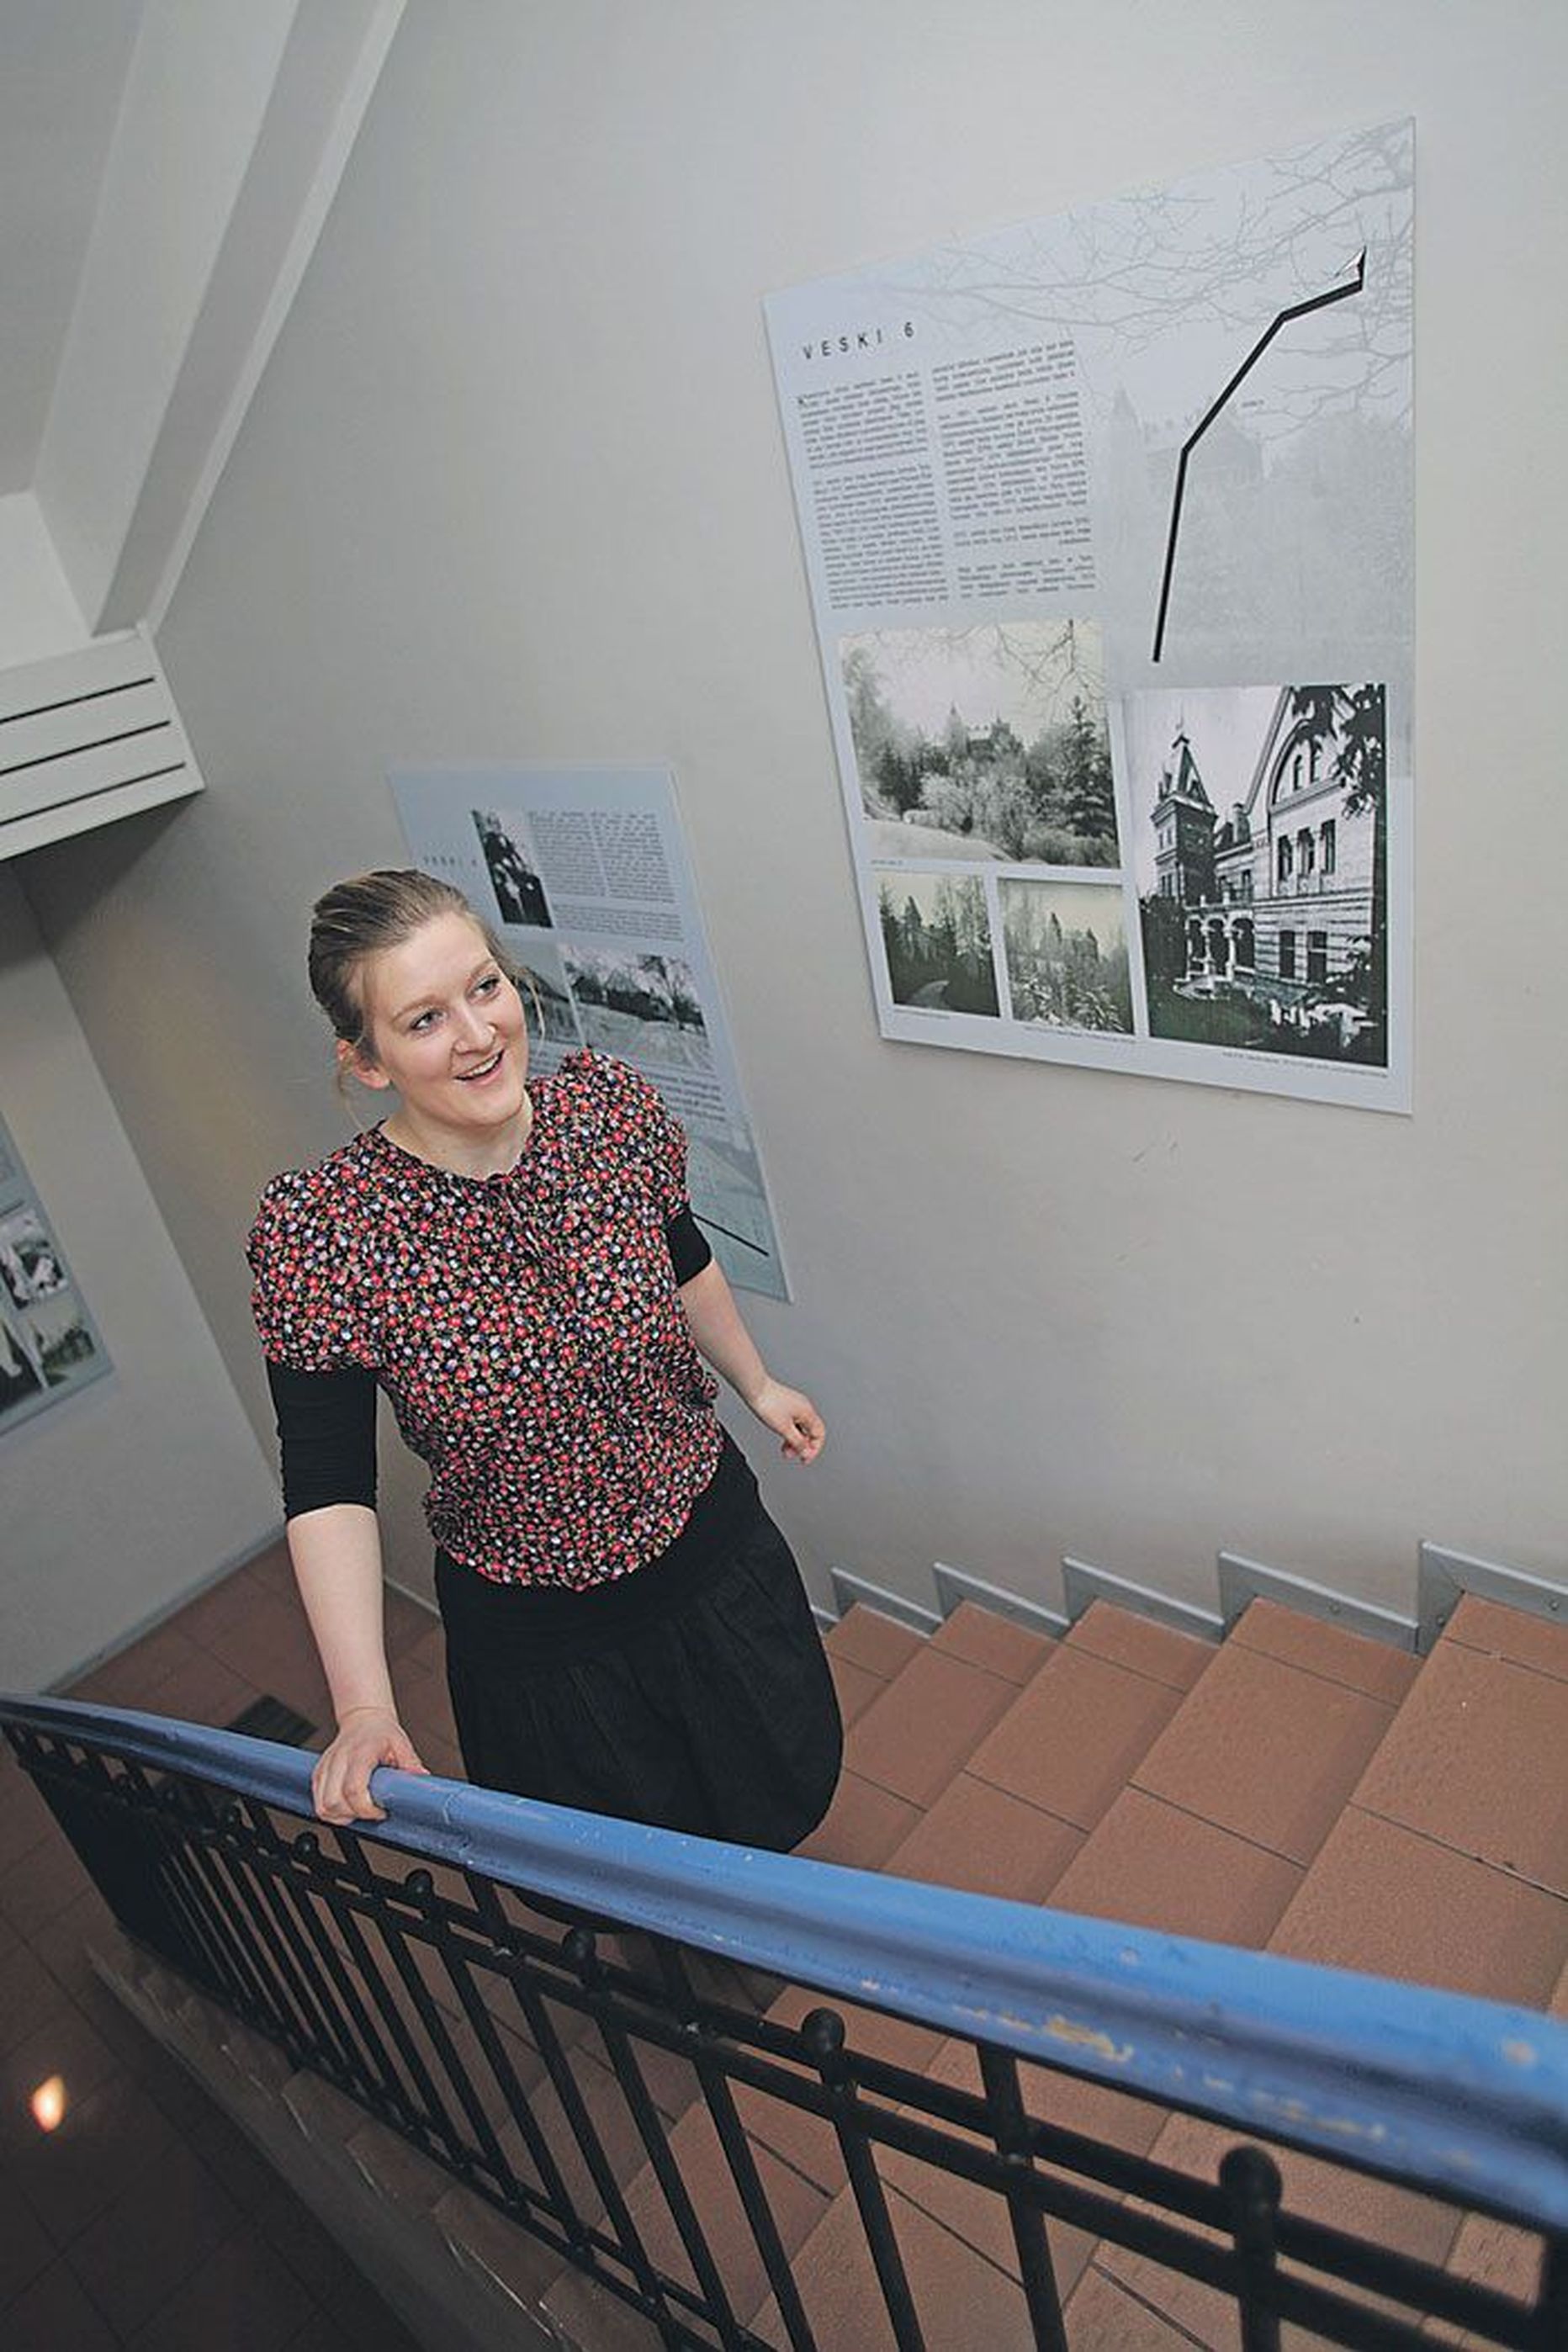 Kunstiakadeemia rahvakunsti ja kultuuriantropoloogia osakonna magistrant Karin Leivategija (24) koostas ERMi näitusemajja väljapaneku, mis ulatub trepikojast näitusesaali.